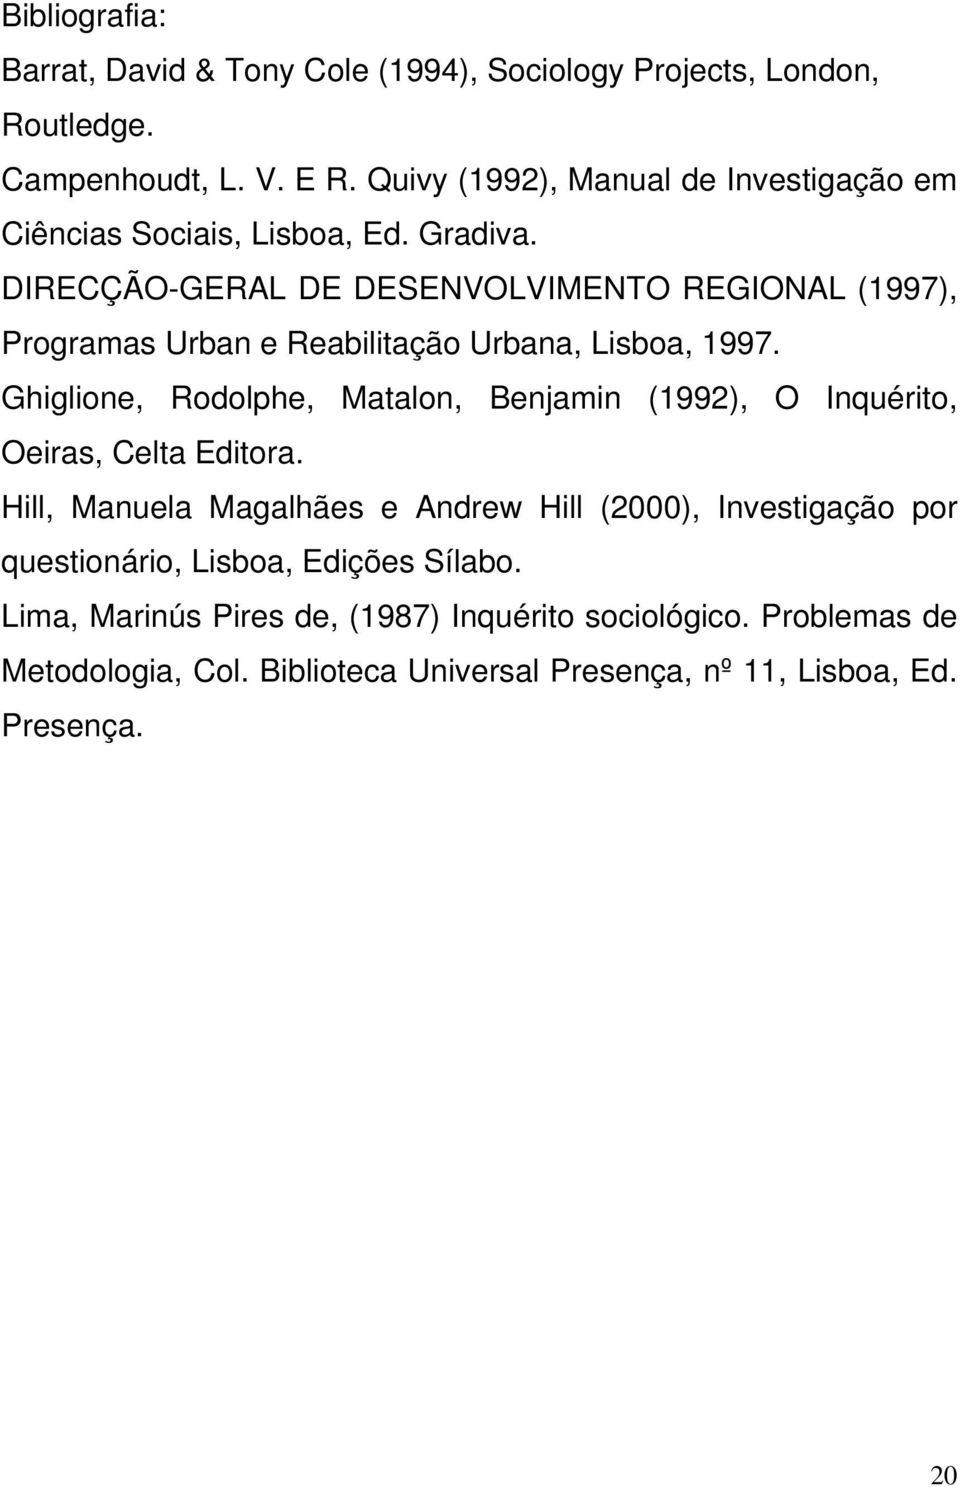 DIRECÇÃO-GERAL DE DESENVOLVIMENTO REGIONAL (1997), Programas Urban e Reabilitação Urbana, Lisboa, 1997.